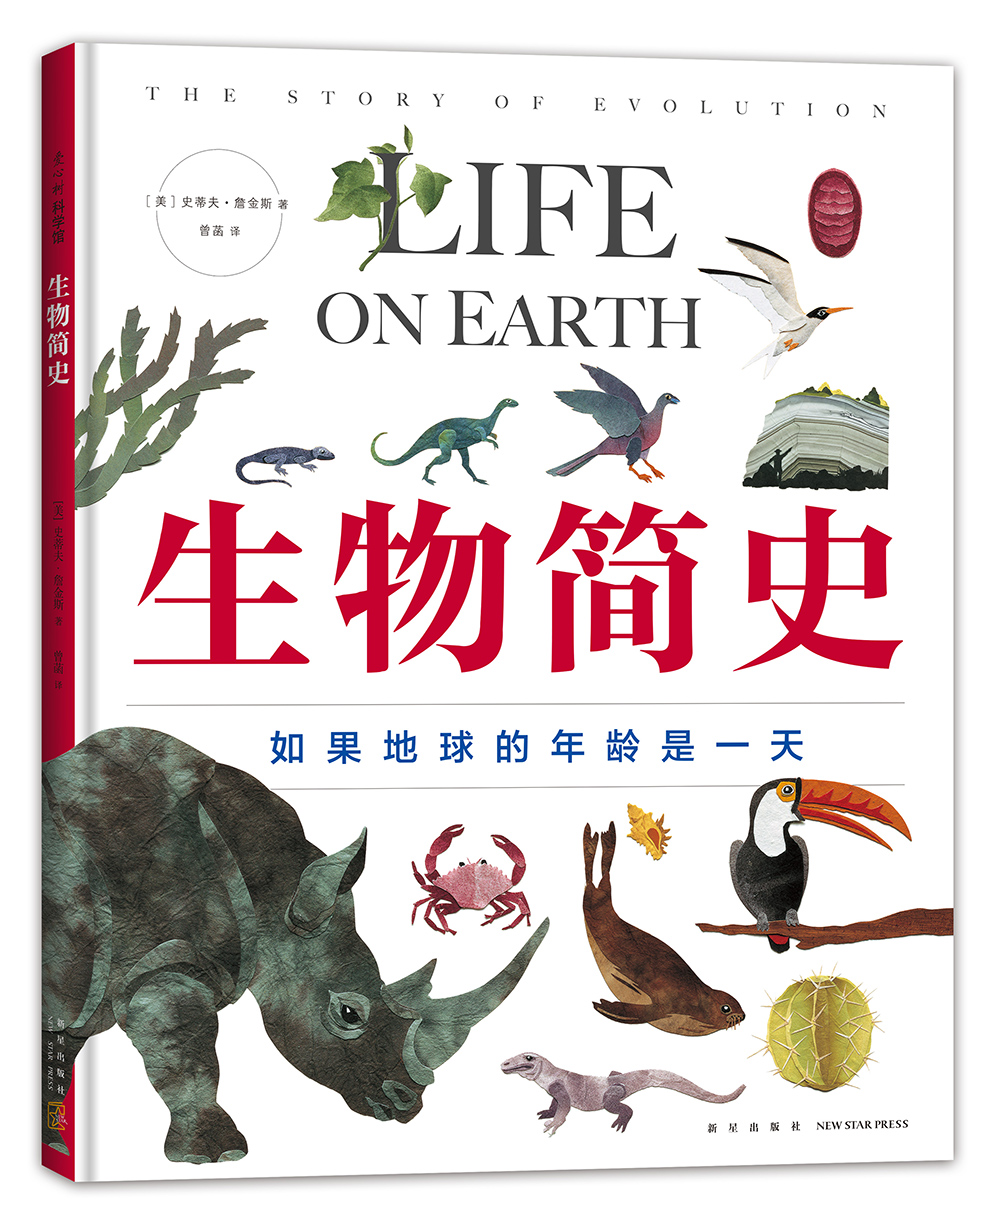 生物简史——如果地球的年龄是一天 3-6-7-10岁 科普绘本 凯迪克奖得主史蒂夫·詹金斯作品 生物进化 拼贴画